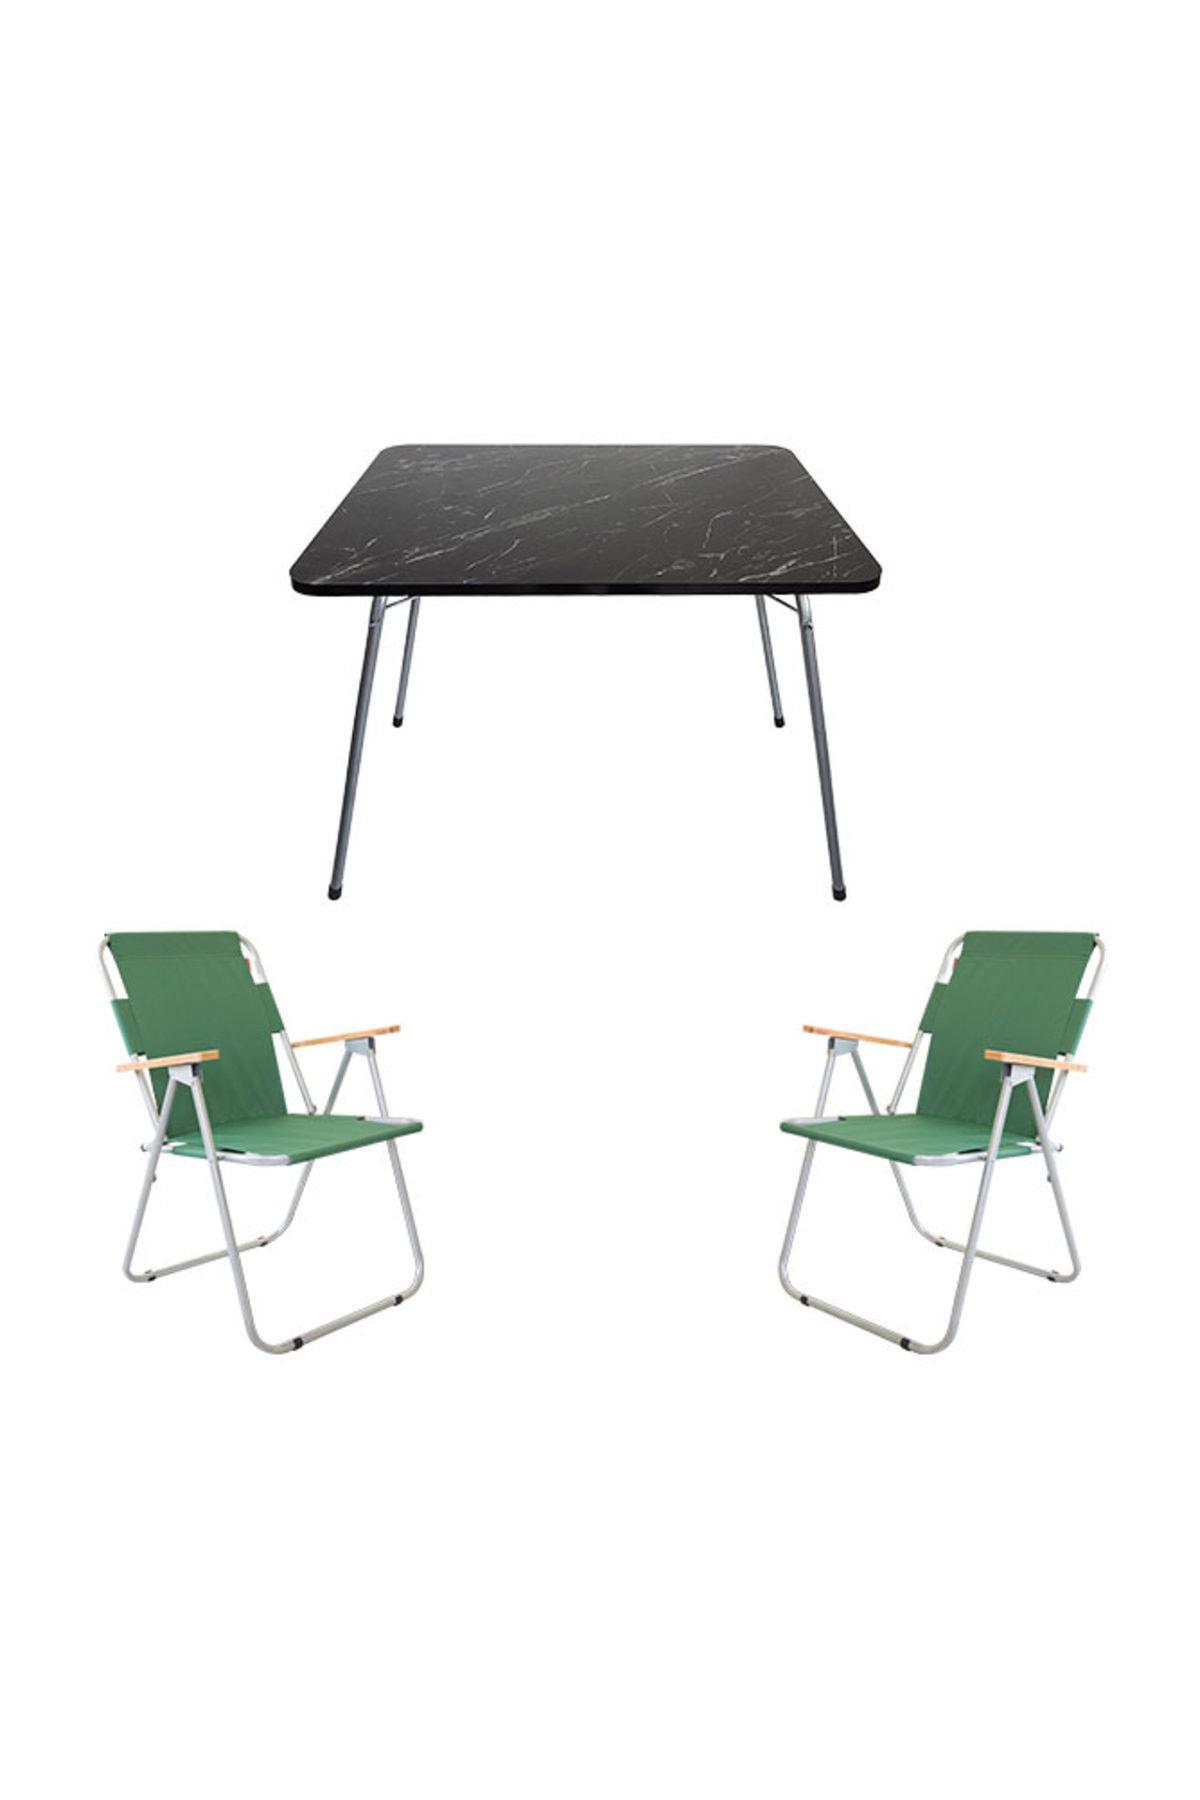 Bofigo 60 x 80 cm Tabureli Çantalı Dikdörtgen Granit Katlanır Kamp Masası Siyah + 2 Adet Katlanır Sandalye Yeşil